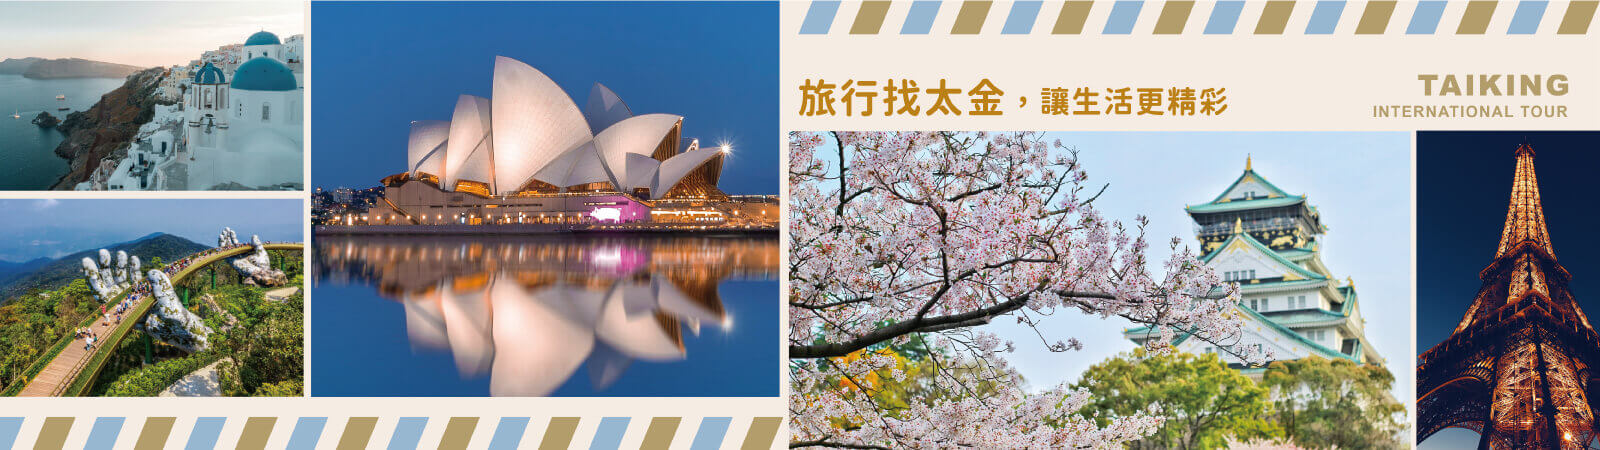 太金國際旅行社的旅遊行程介紹 Banner圖片